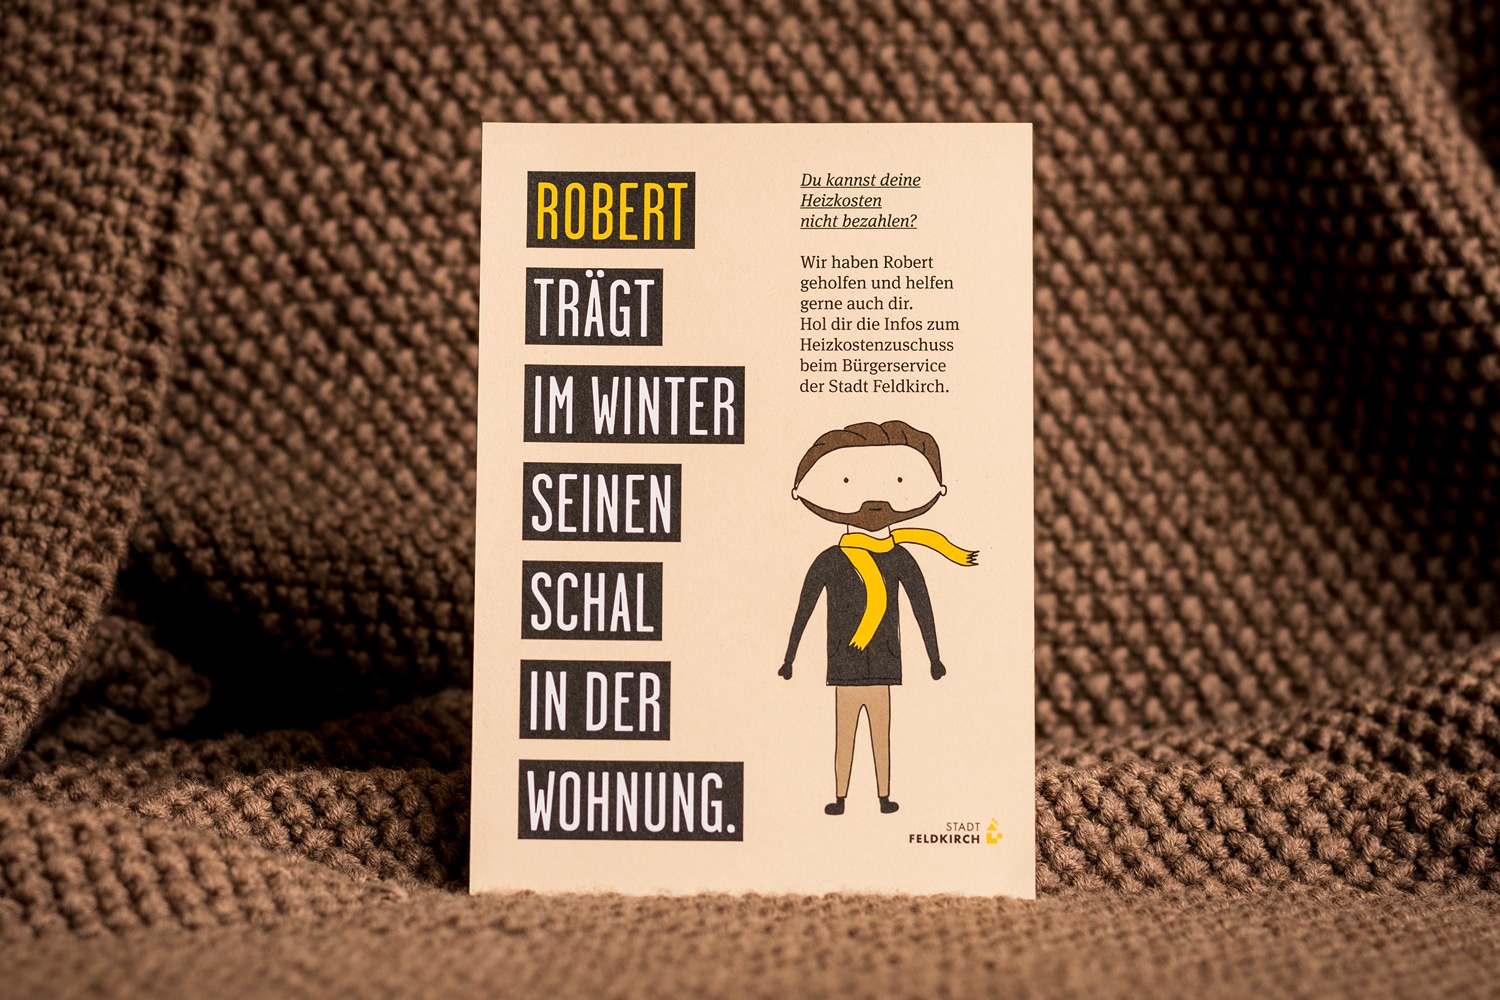 Werbekampagne der Stadt Feldkirich zum Thema "Armut" - Robert trägt im Winter seinen Schal in der Wohnung